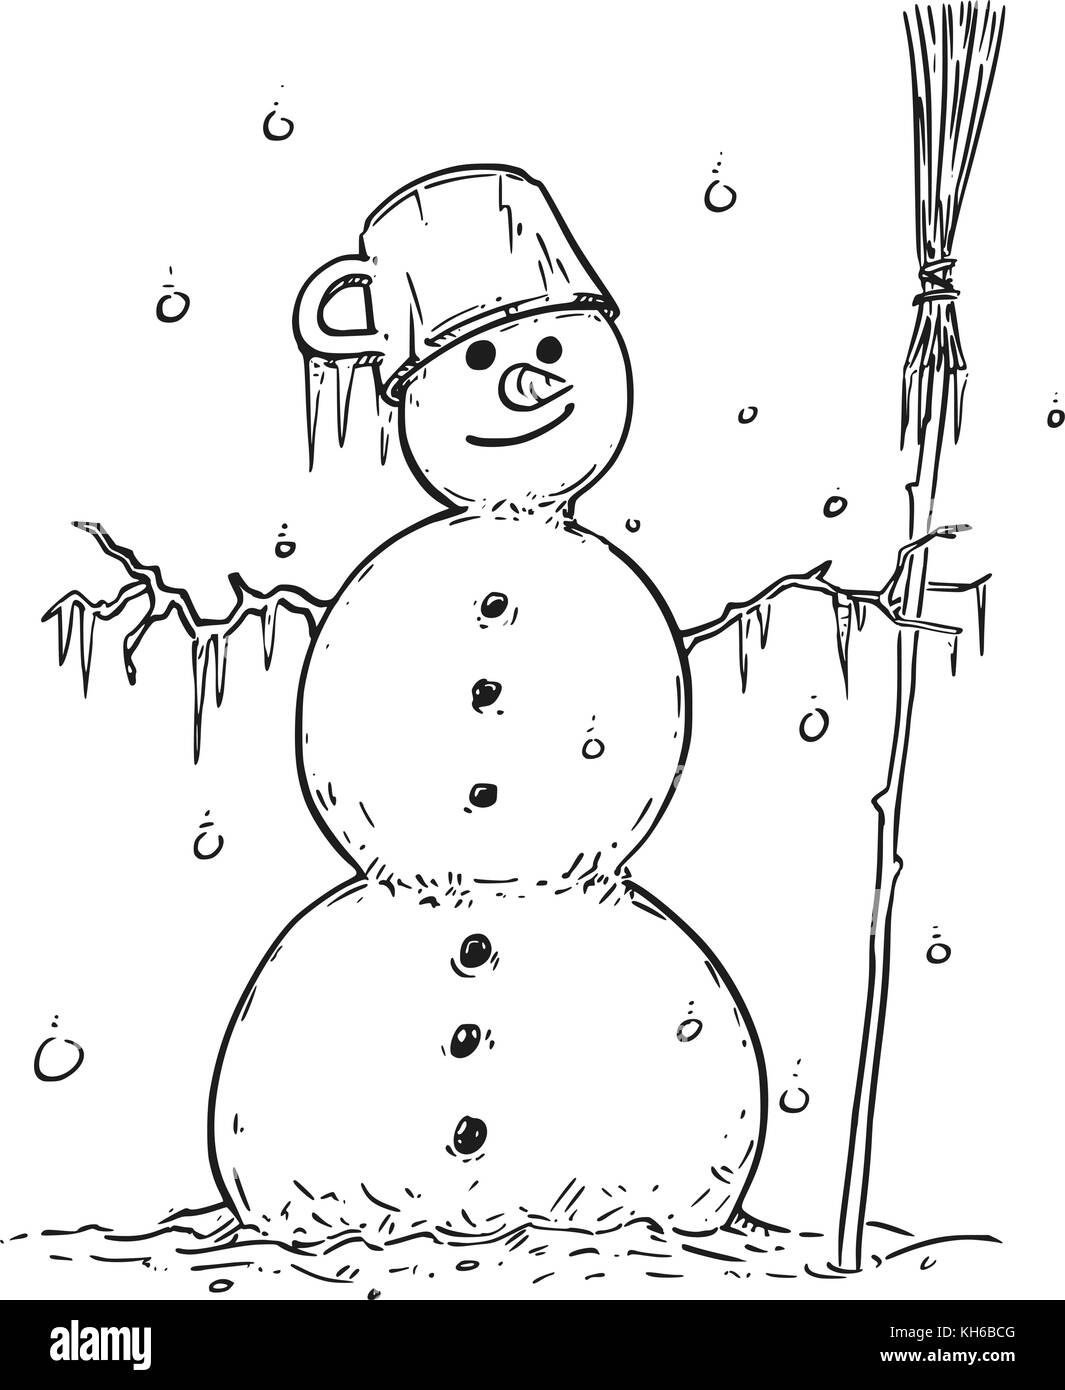 Cartoon zeichnen Abbildung: Lächelnde Schneemann mit Besen und Topf auf dem Kopf. Stock Vektor